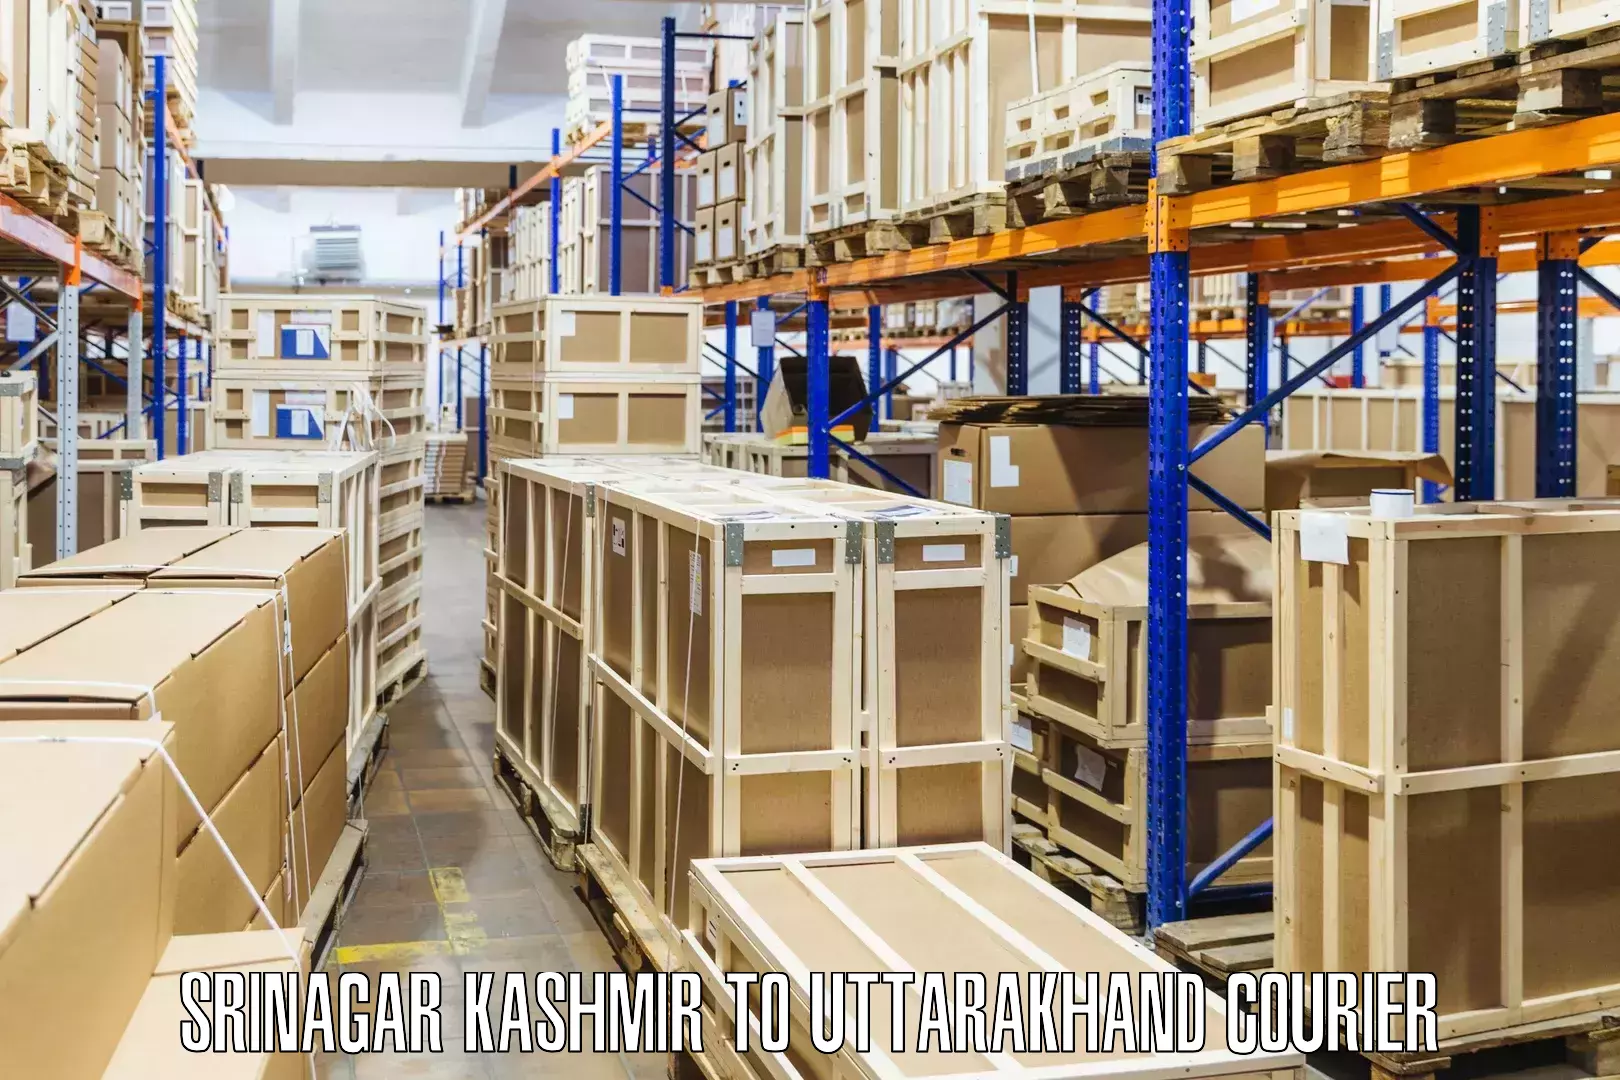 High-capacity parcel service Srinagar Kashmir to Uttarakhand